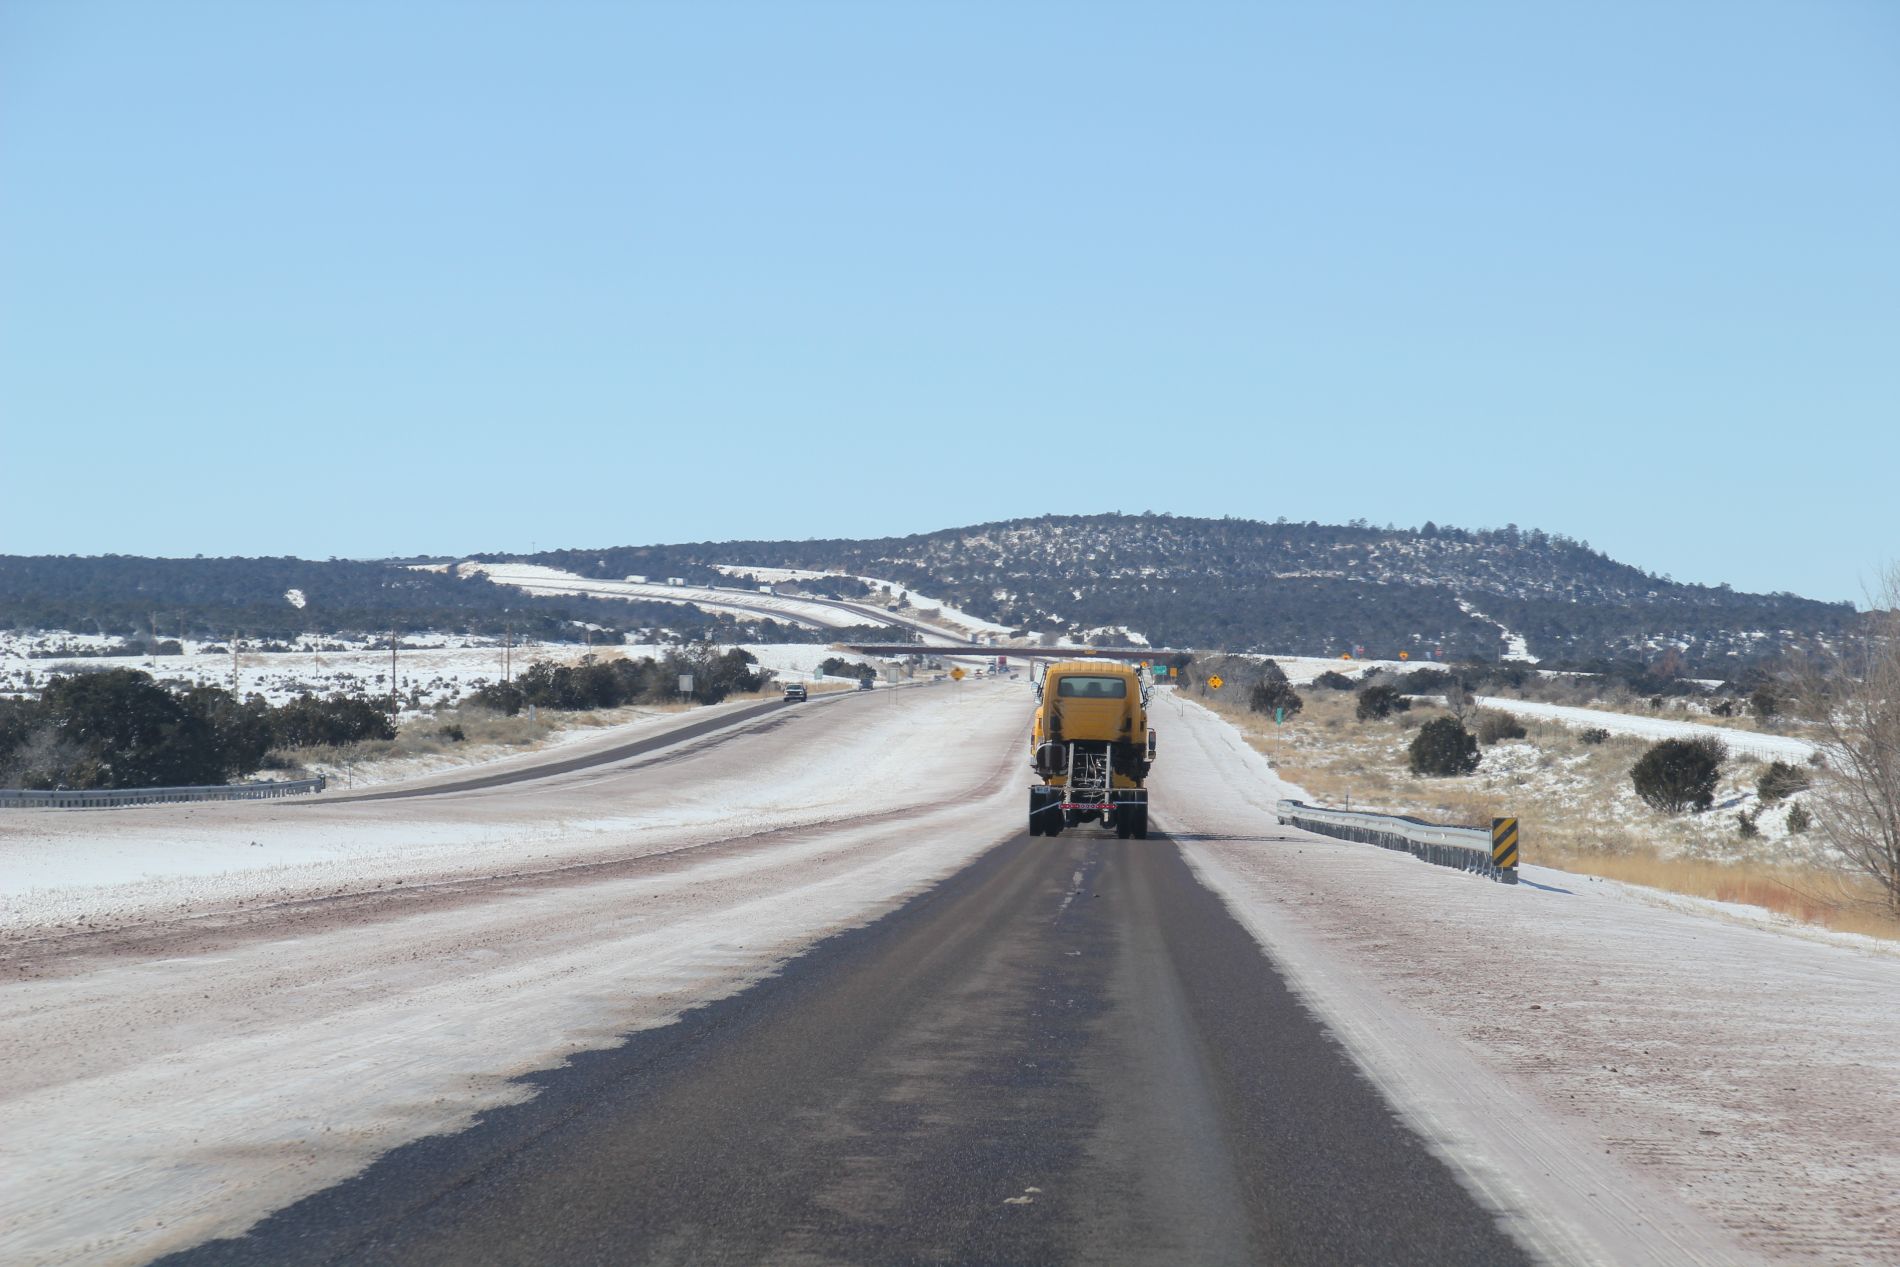 Snow plow on snowy road near Santa Rosa, New Mexico